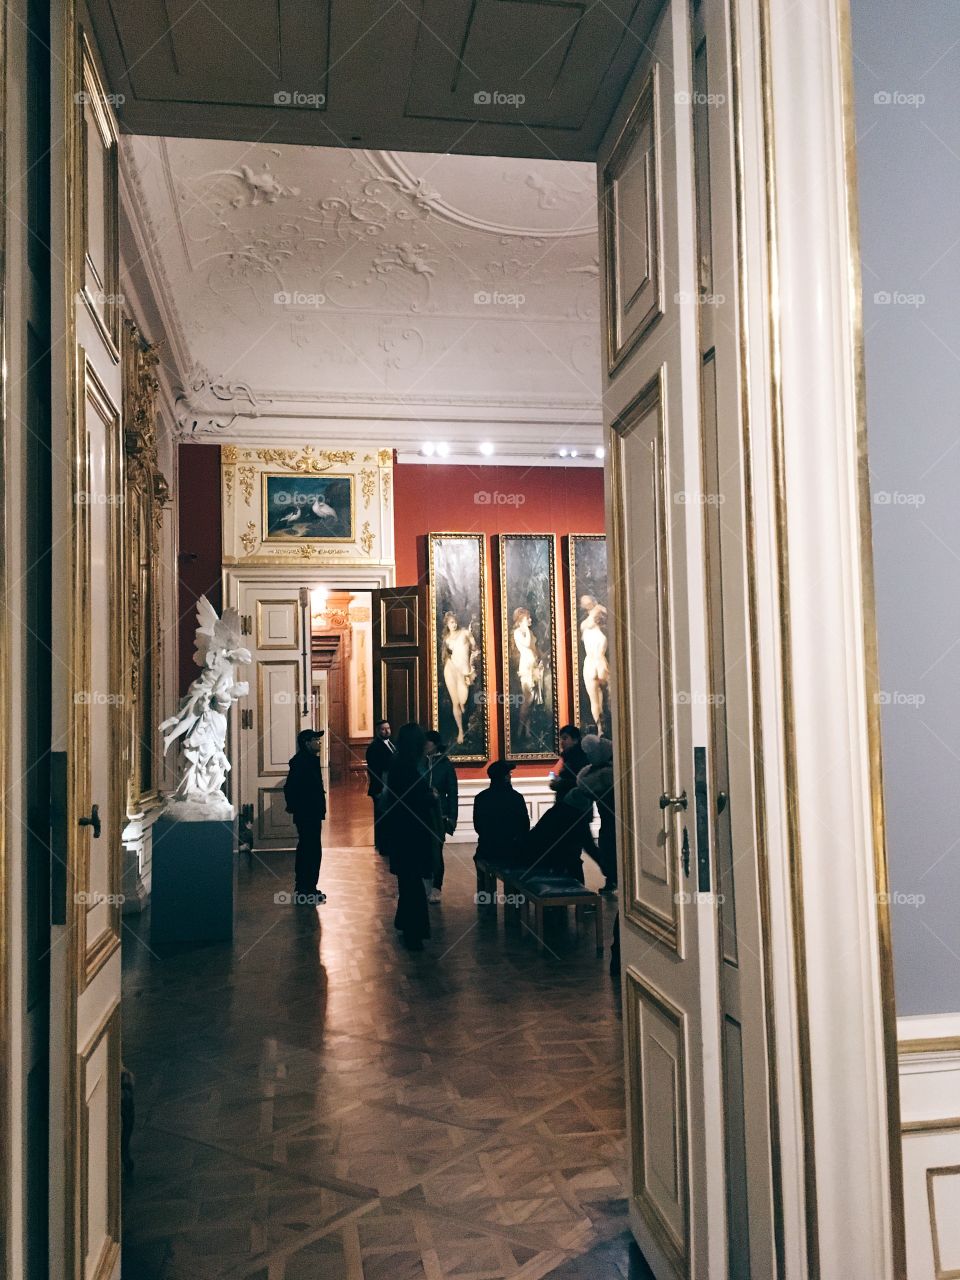 Belvedere gallery in Vienna, Austria.